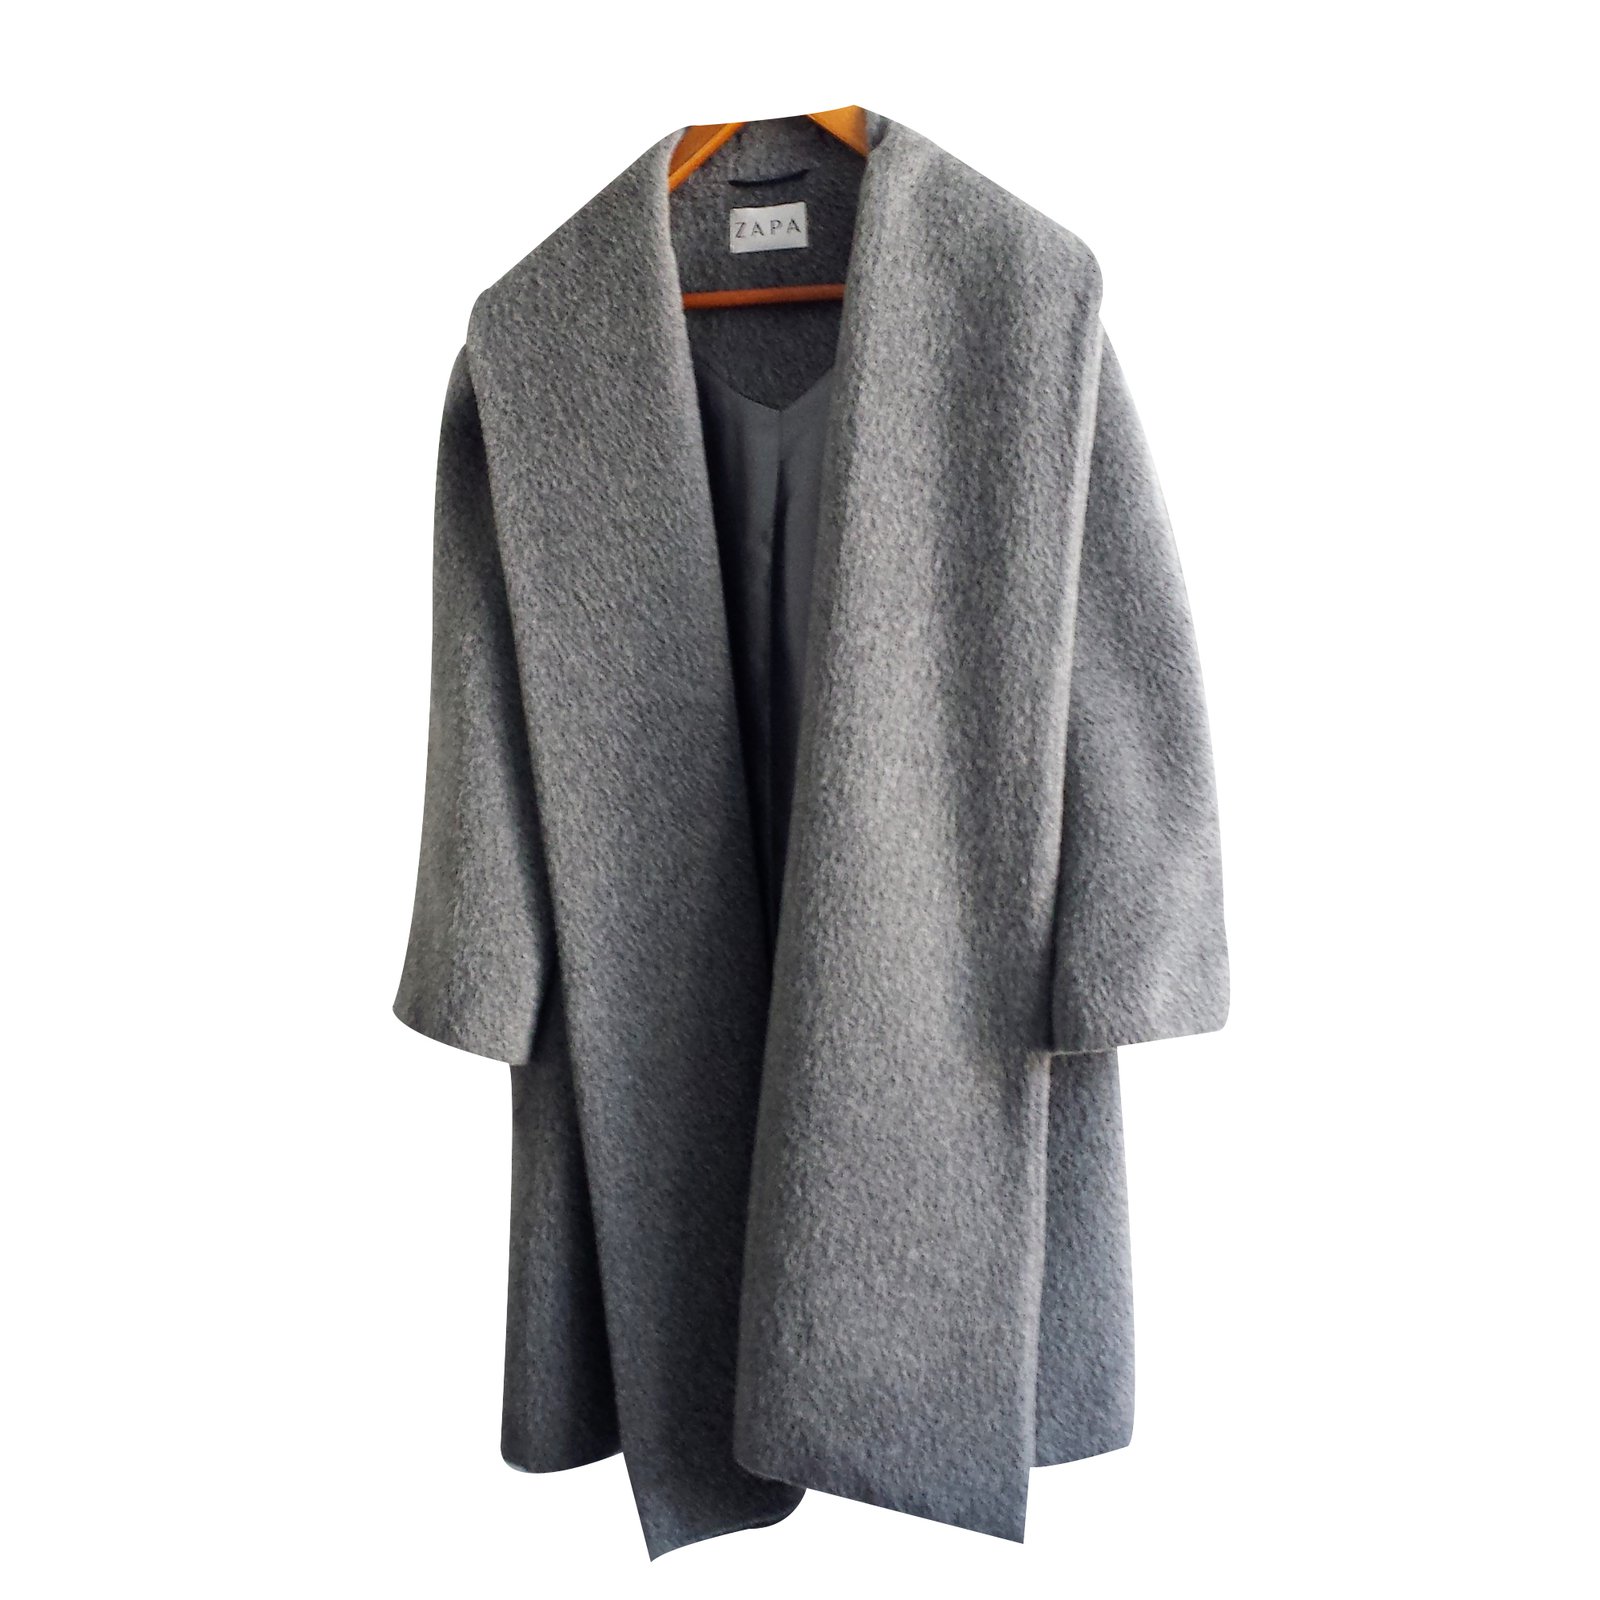 manteau gris zapa